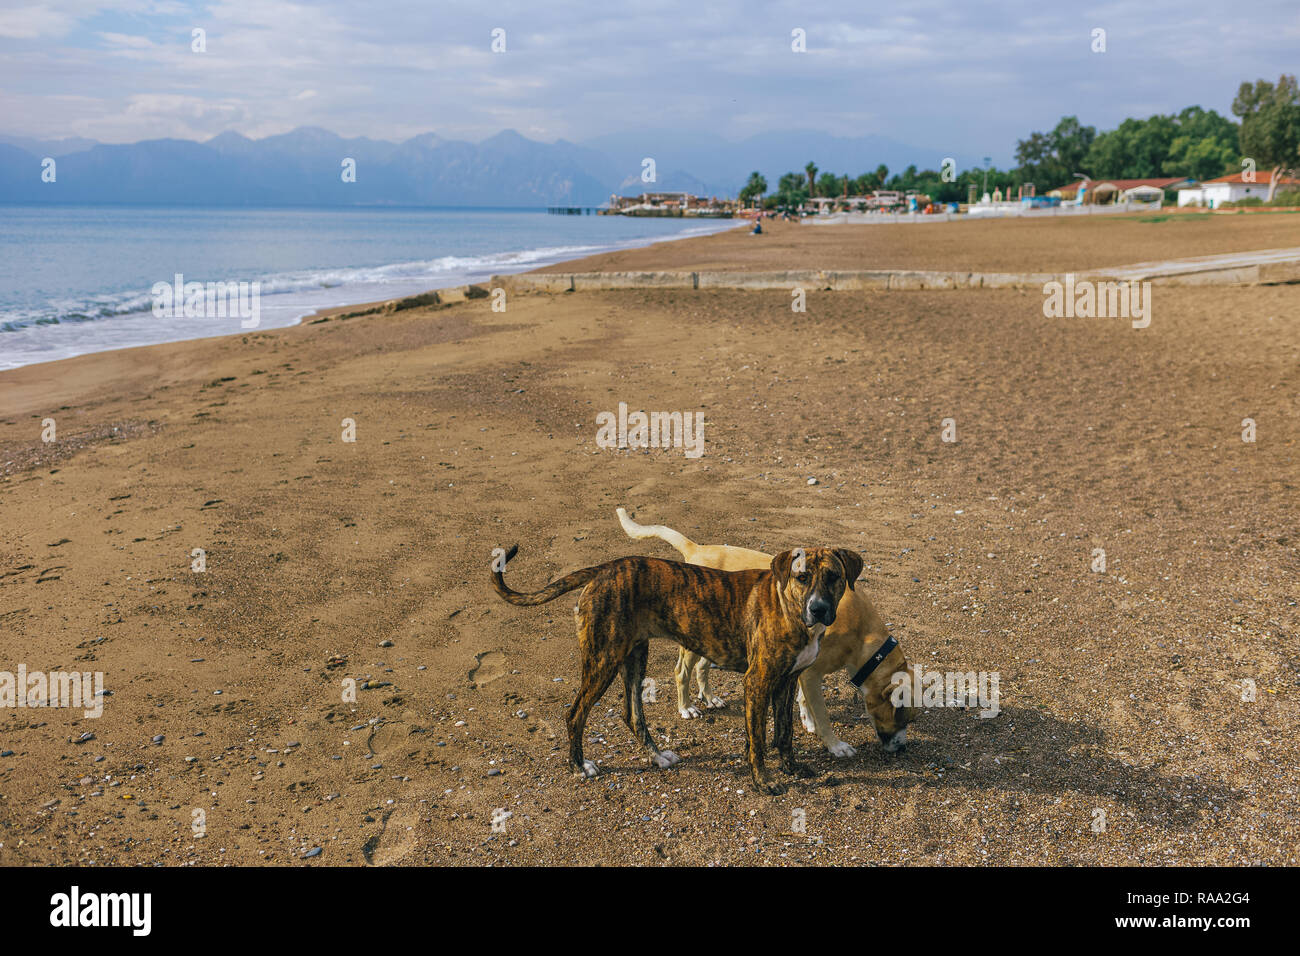 Ruhe nicht reinrassige Hunde spielen an sonnigen Sommertagen Sandstrand. Die Türkei. Horizontale Farbfotografie. Stockfoto